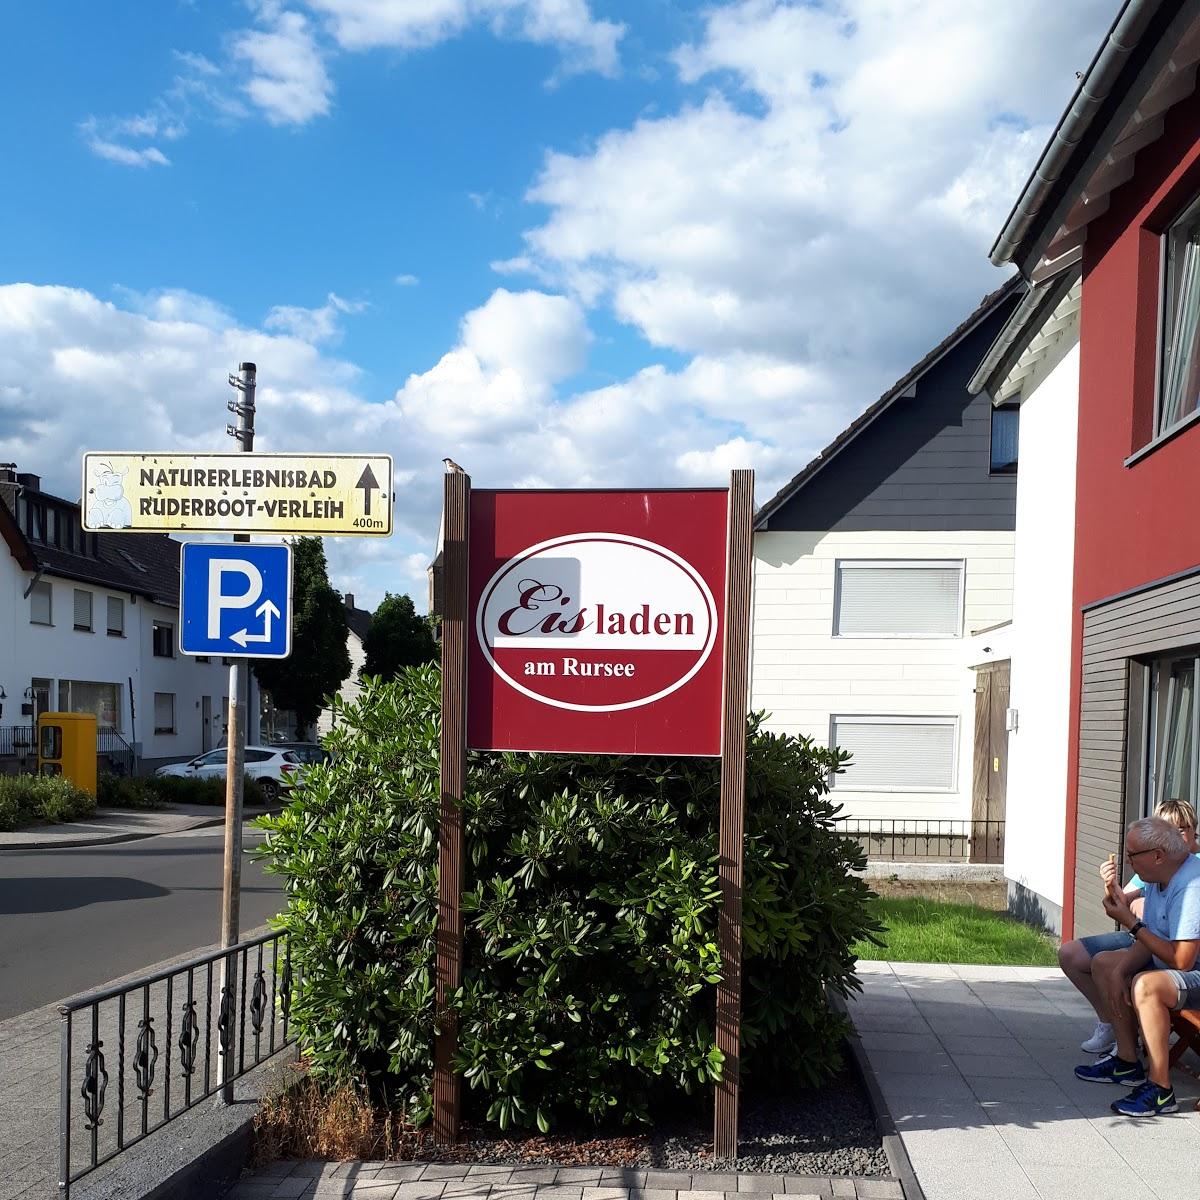 Restaurant "Eisladen am Rursee" in  Simmerath